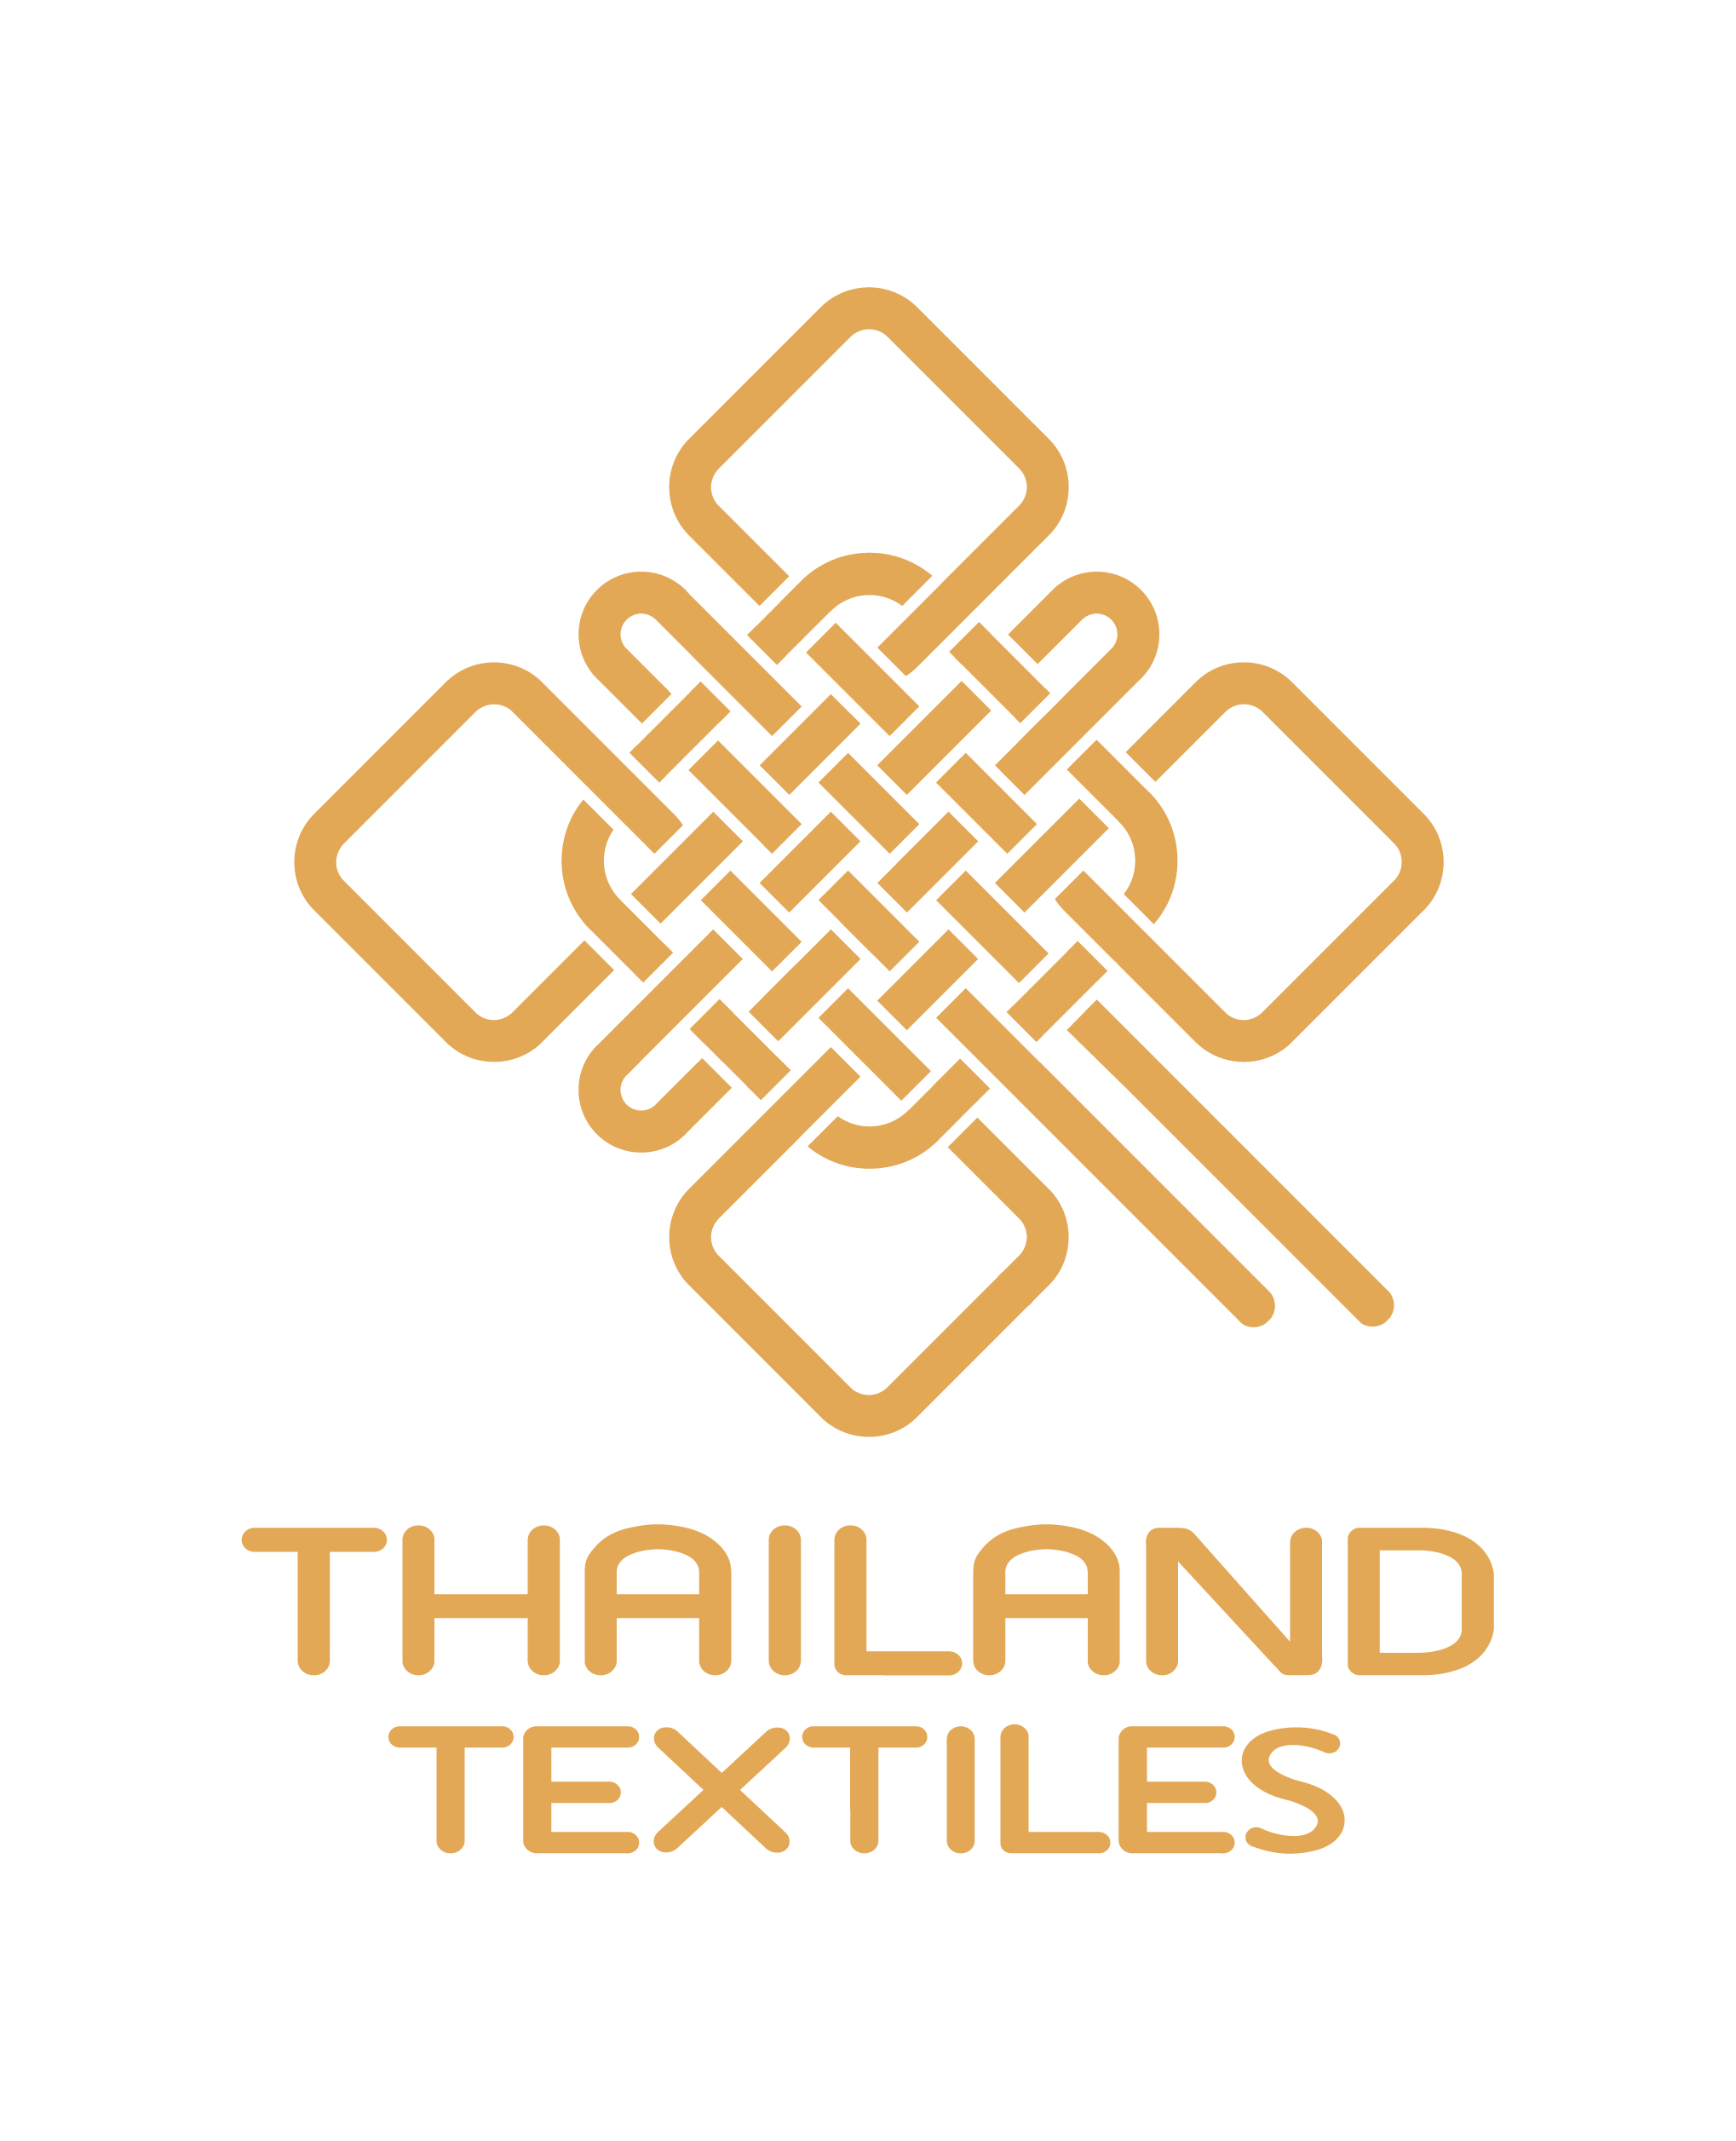 ตรารรับรองคุณภาพ Thailand Textiles Tag